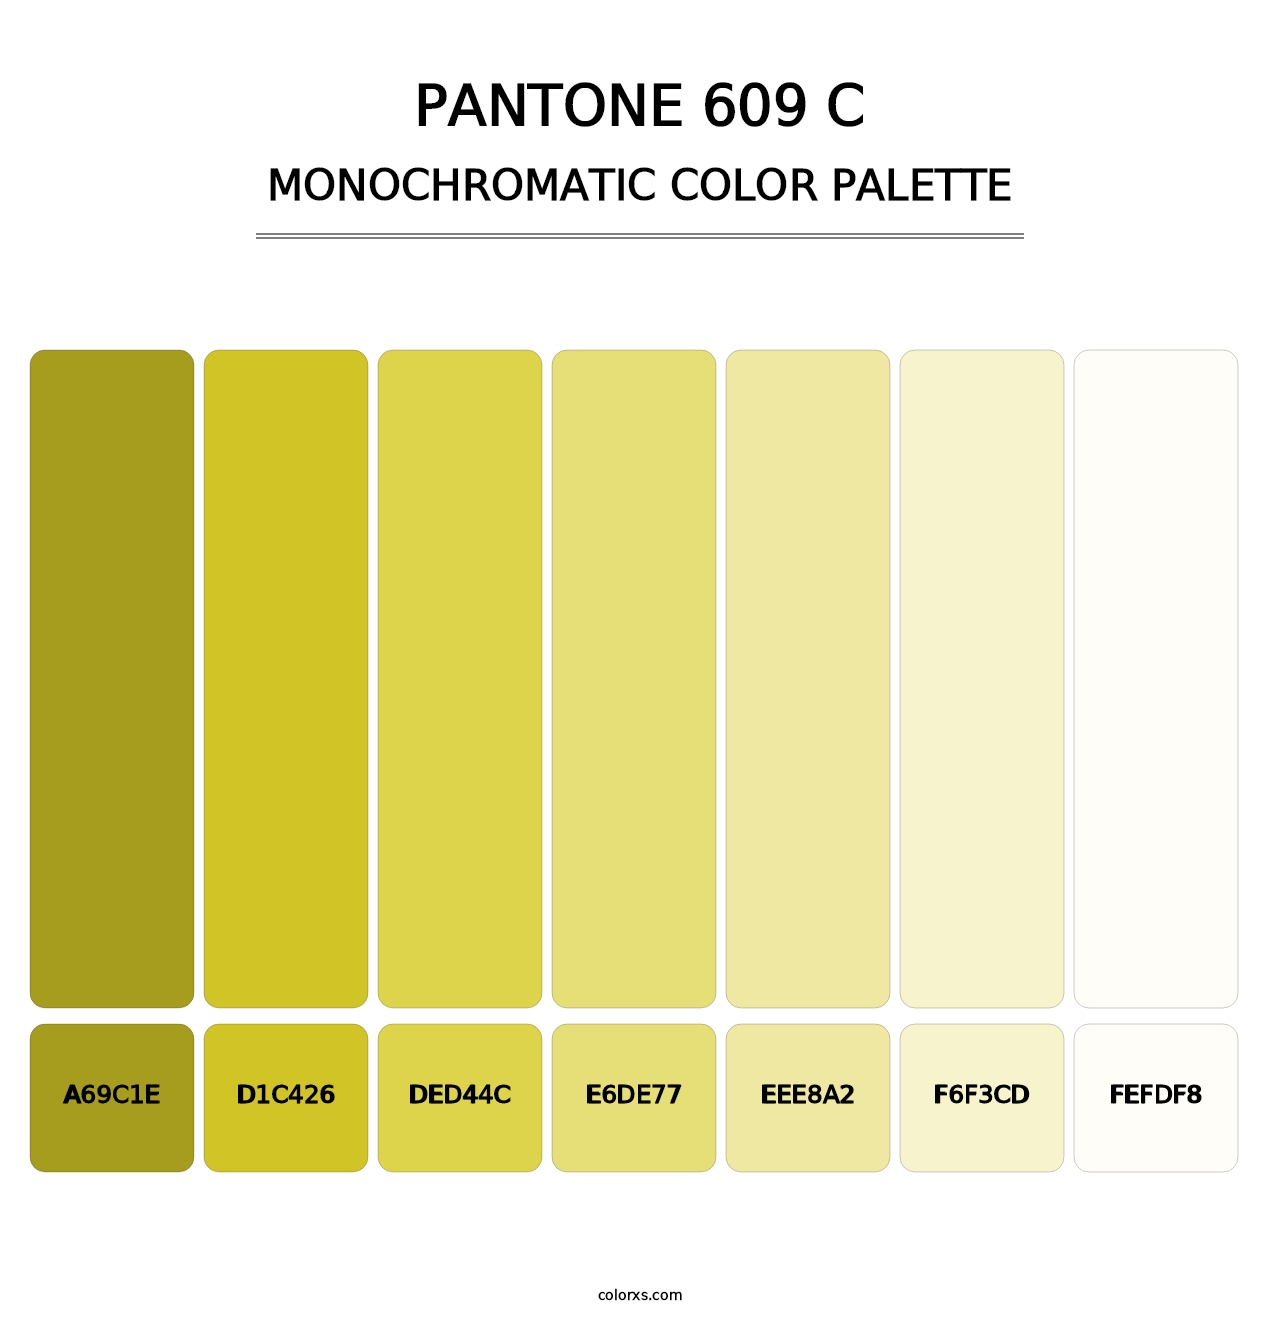 PANTONE 609 C - Monochromatic Color Palette